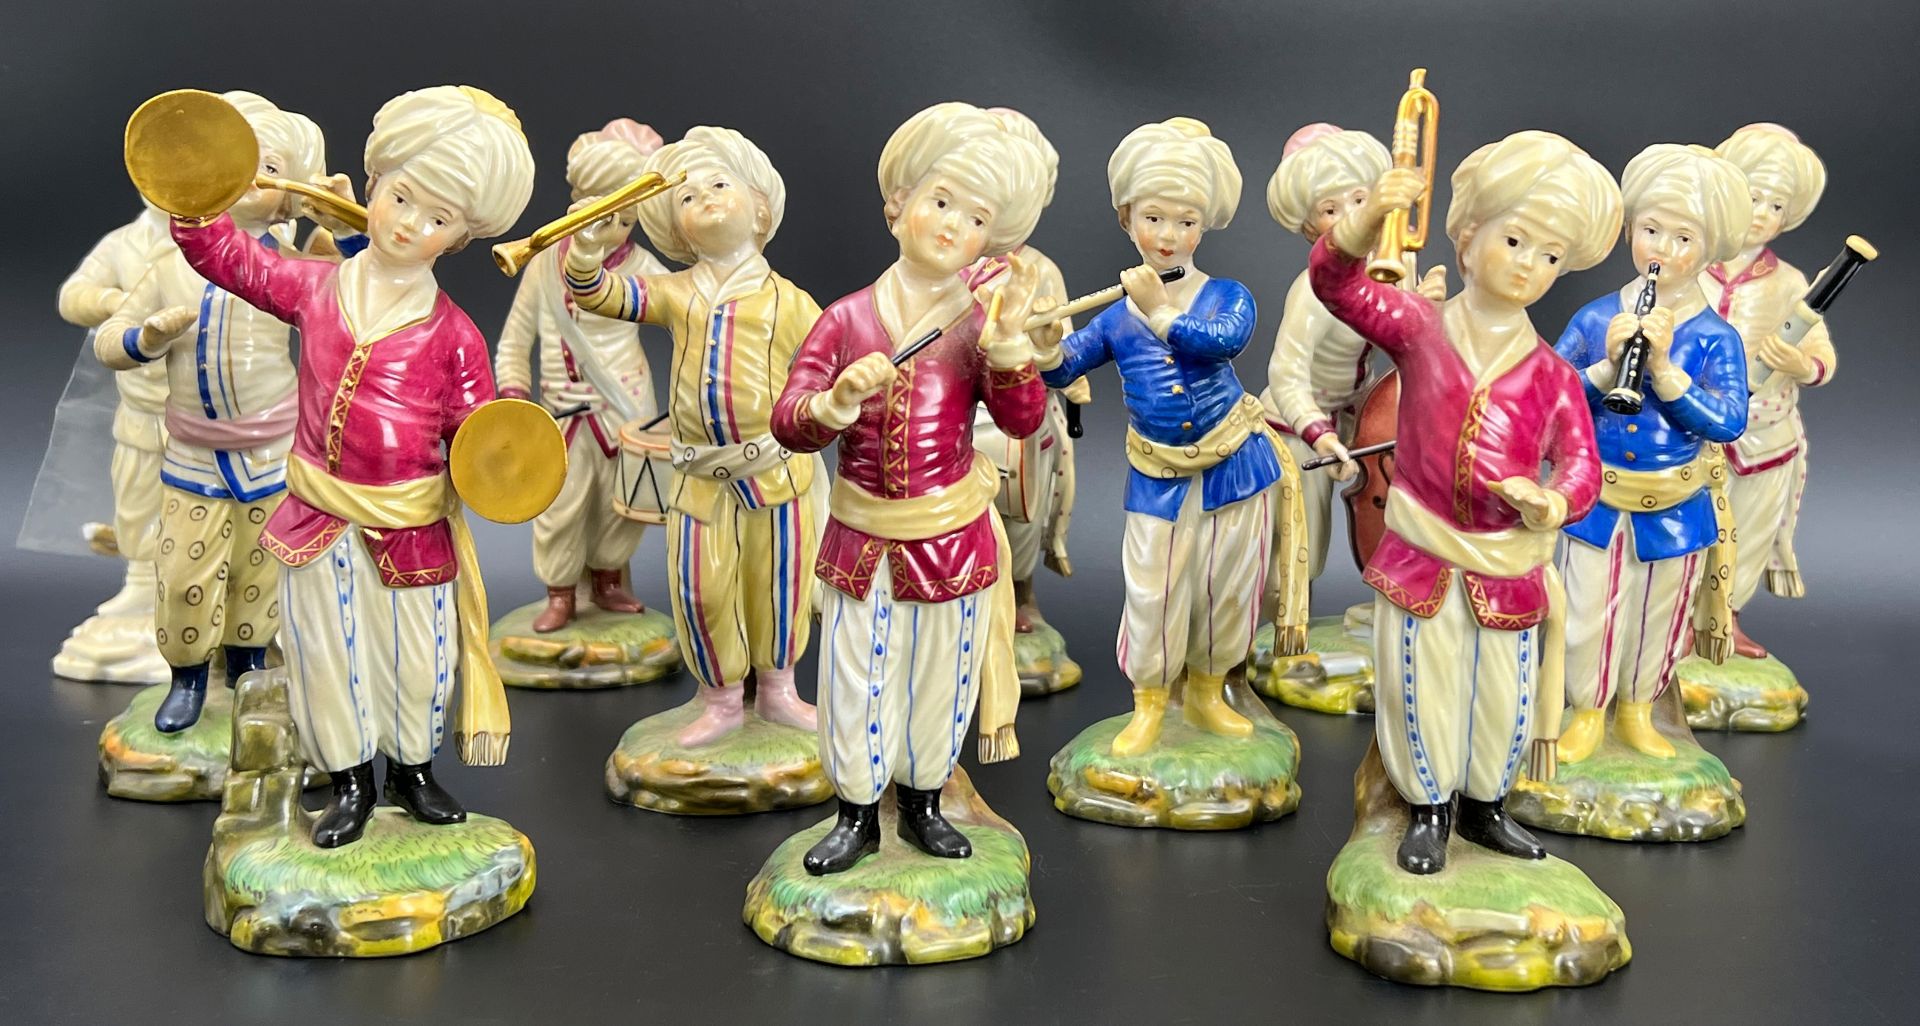 12 figurines "Türkenkapelle. Höchster Porzellanmanufaktur.